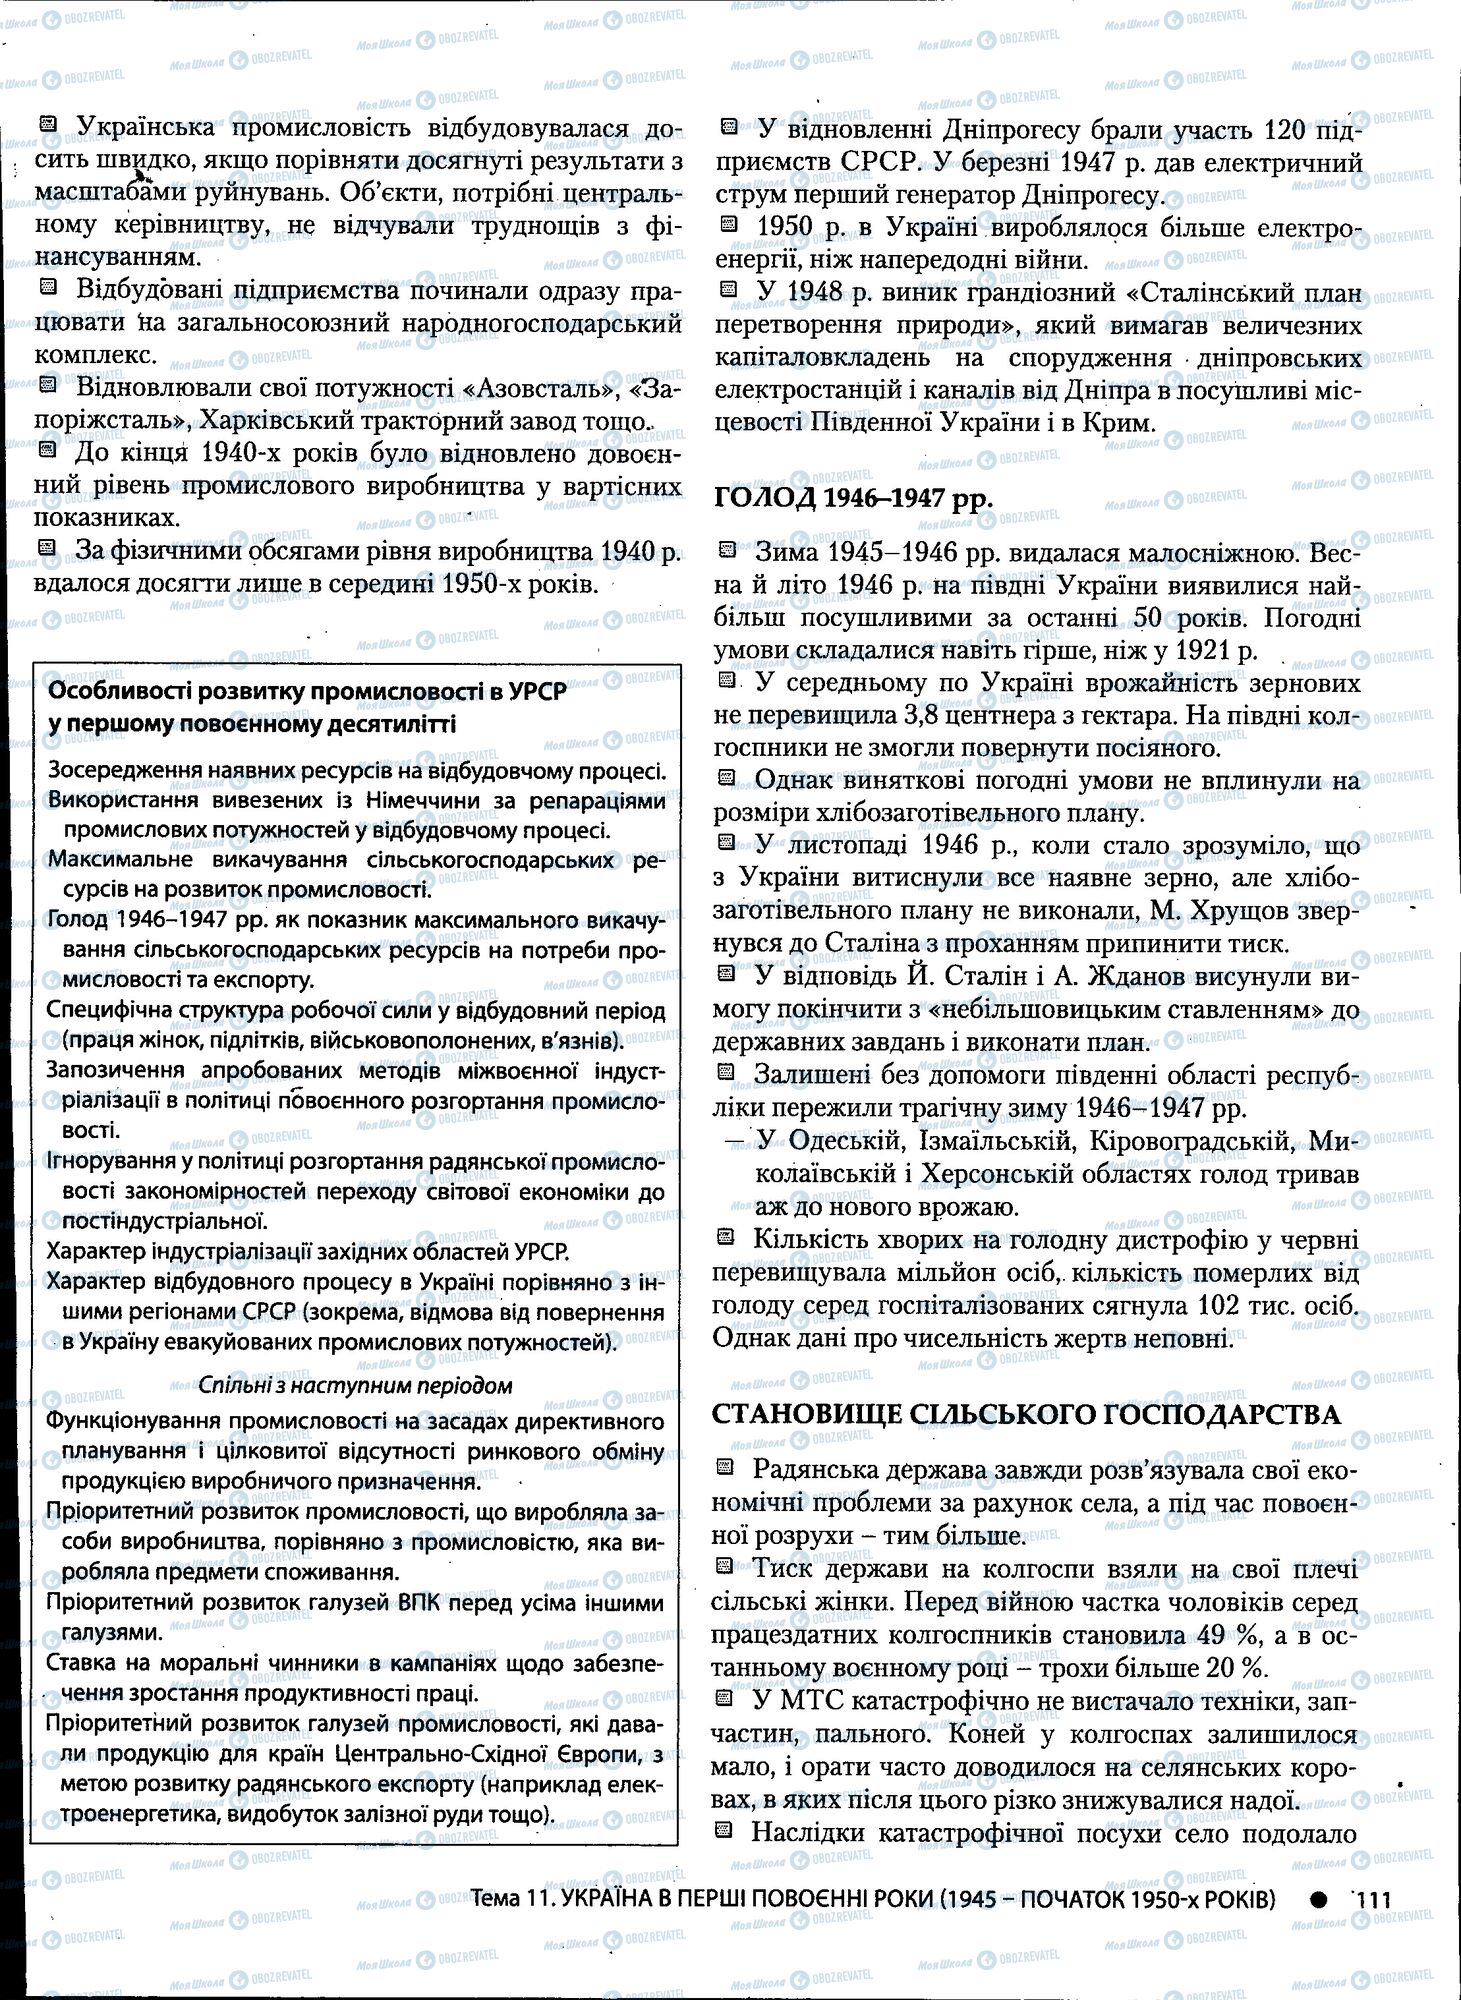 ДПА История Украины 11 класс страница 111